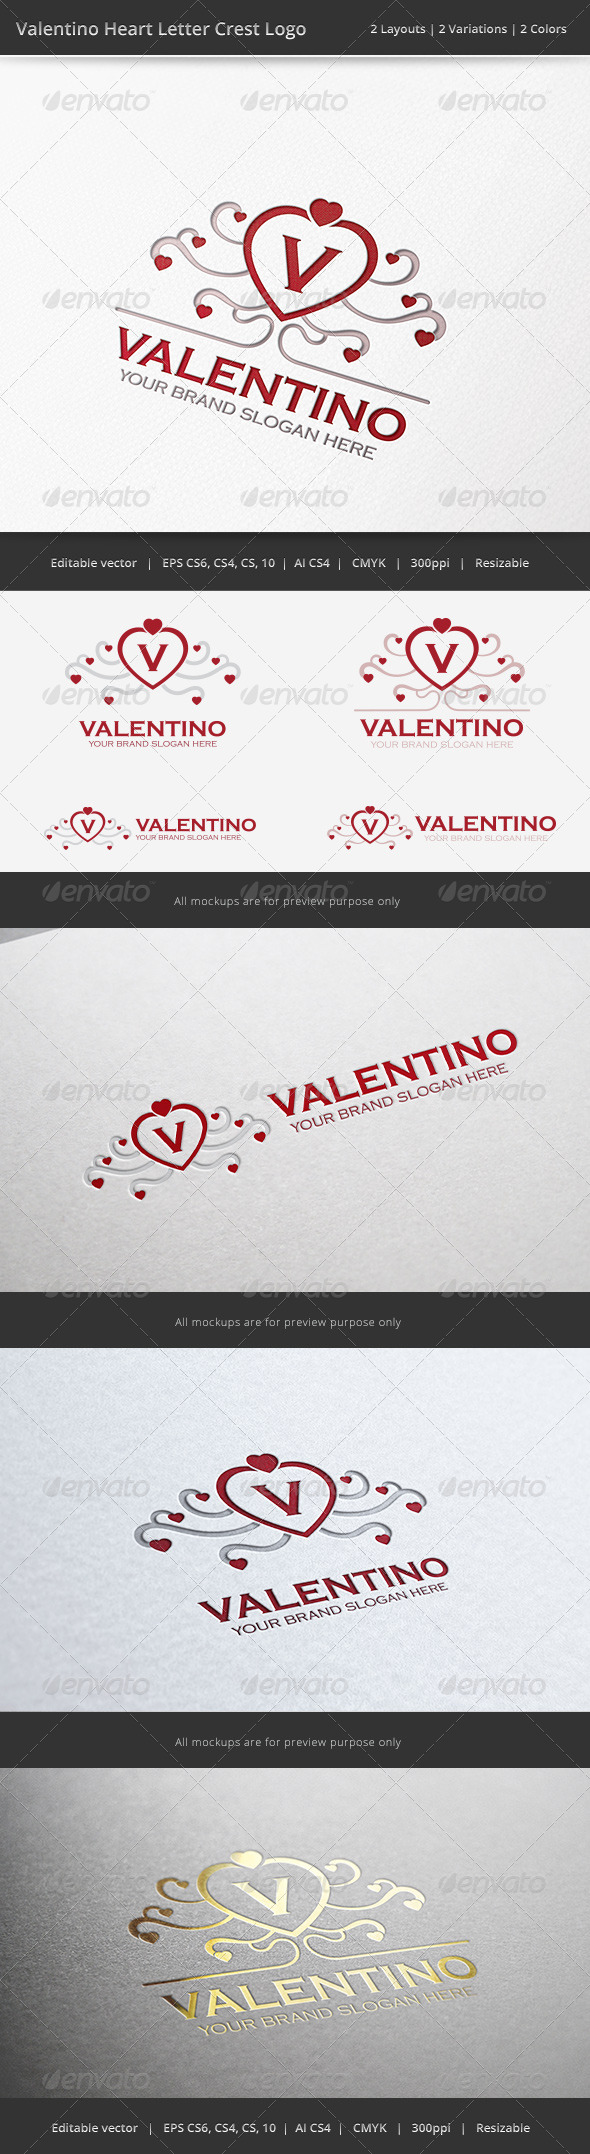 Valentino Heart Letter Crest Logo